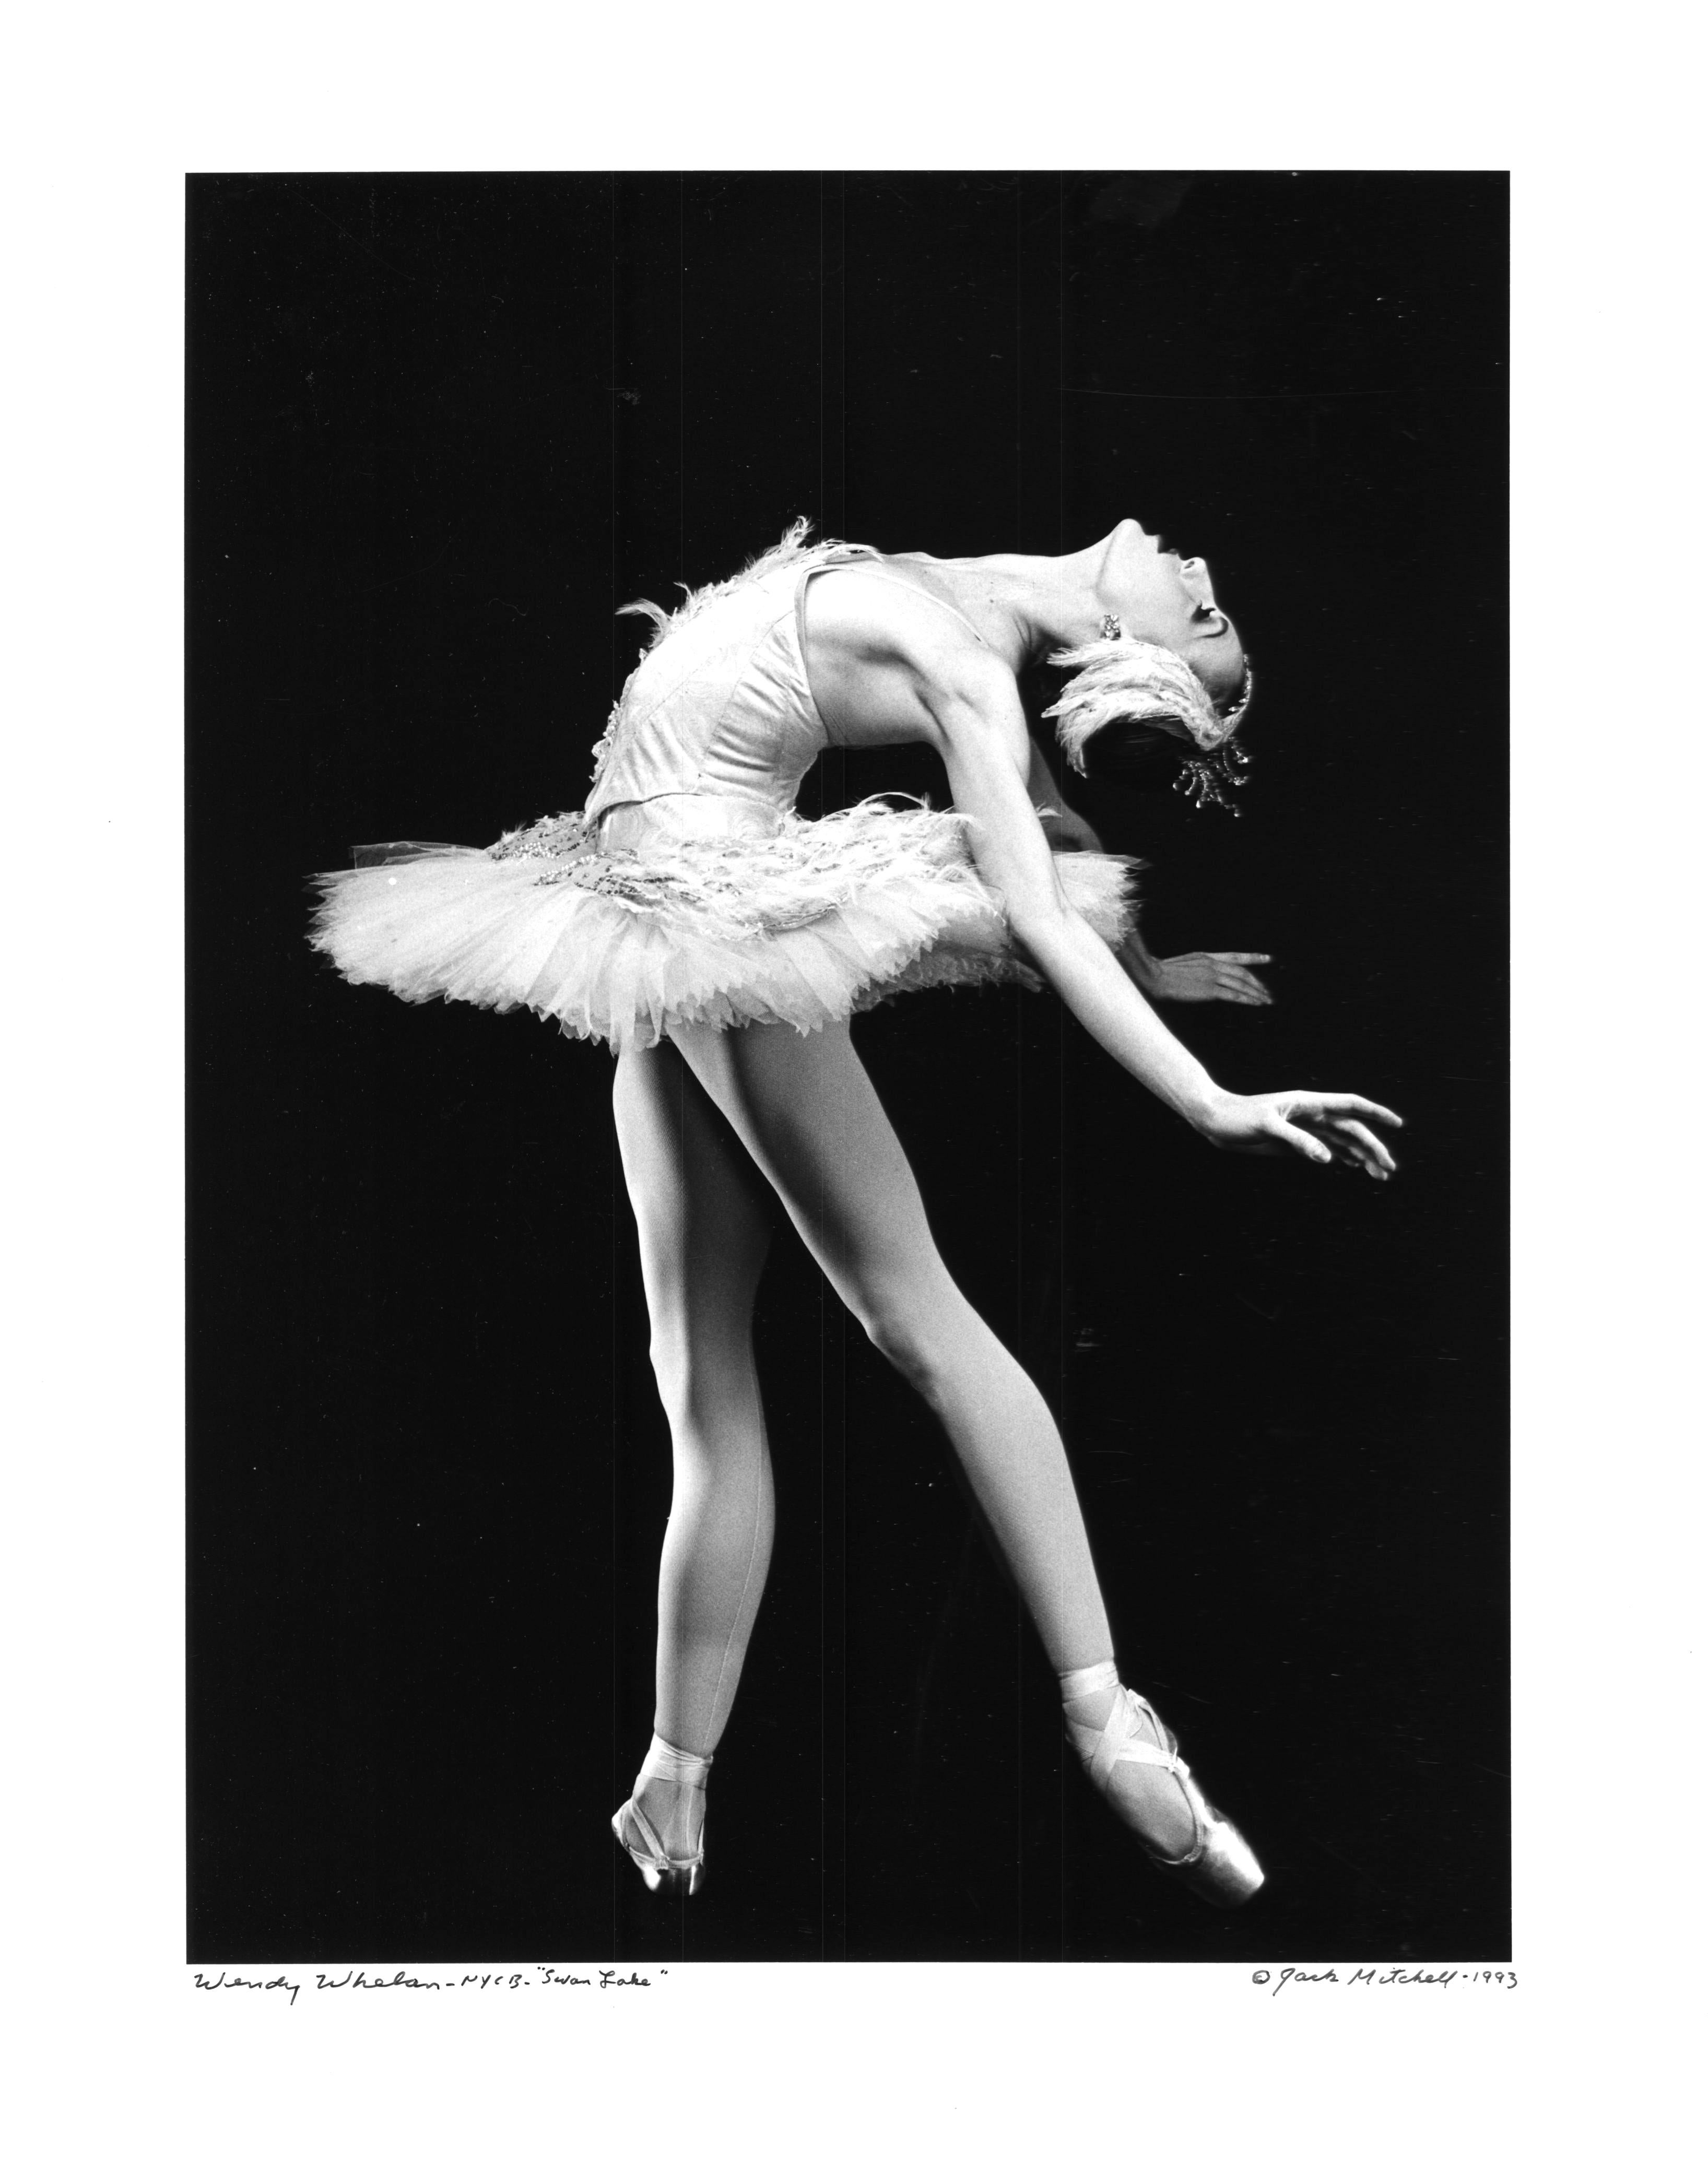 Die Tänzerin des New York City Ballet Wendy Whelan in "Schwanensee", 1993.  Alte Silbergelatine-Ausstellungsfotografie von Jack Mitchell. Signiert von Jack Mitchell auf der Vorder- und Rückseite.

Der amerikanische Fotograf Jack Mitchell (1925-2013)